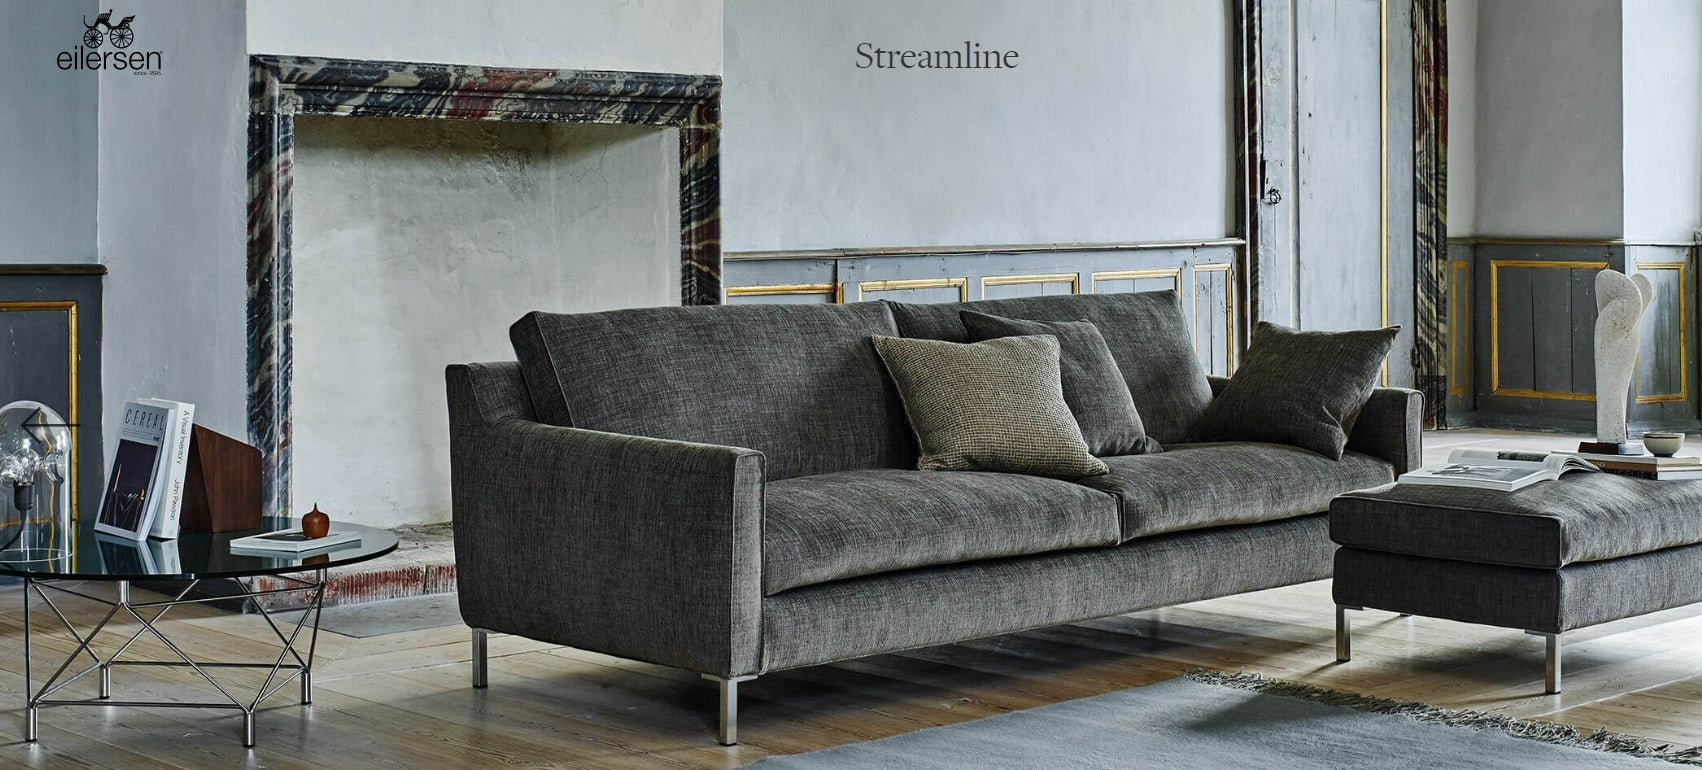 Streamline Sofa - Floor Model